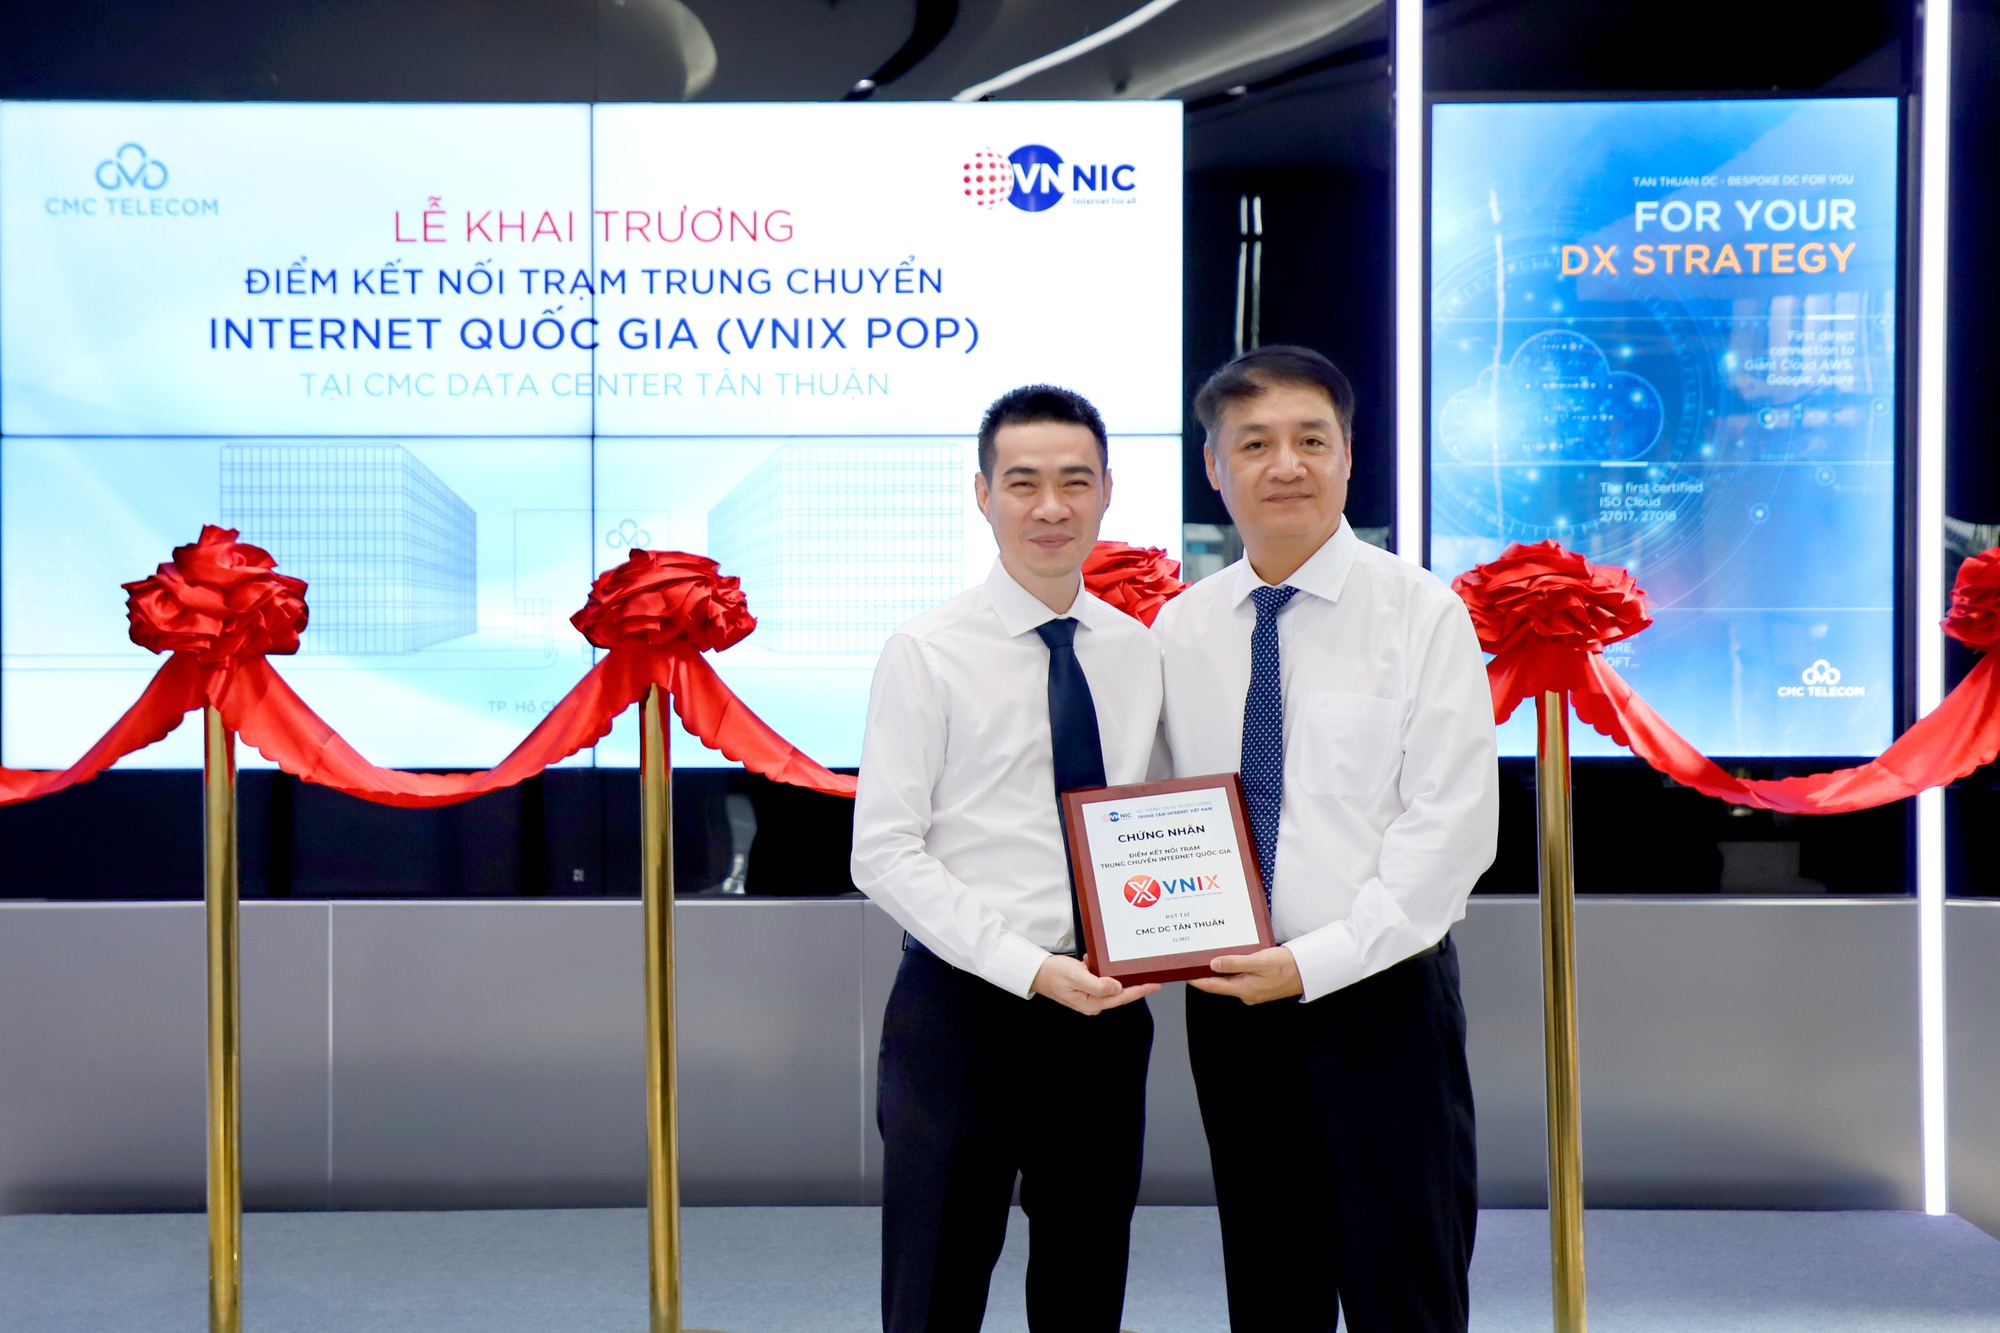 Chính thức khai trương điểm kết nối Trạm trung chuyển Internet quốc gia (VNIX PoP) tại CMC Telecom Data Center Tân Thuận- Ảnh 1.